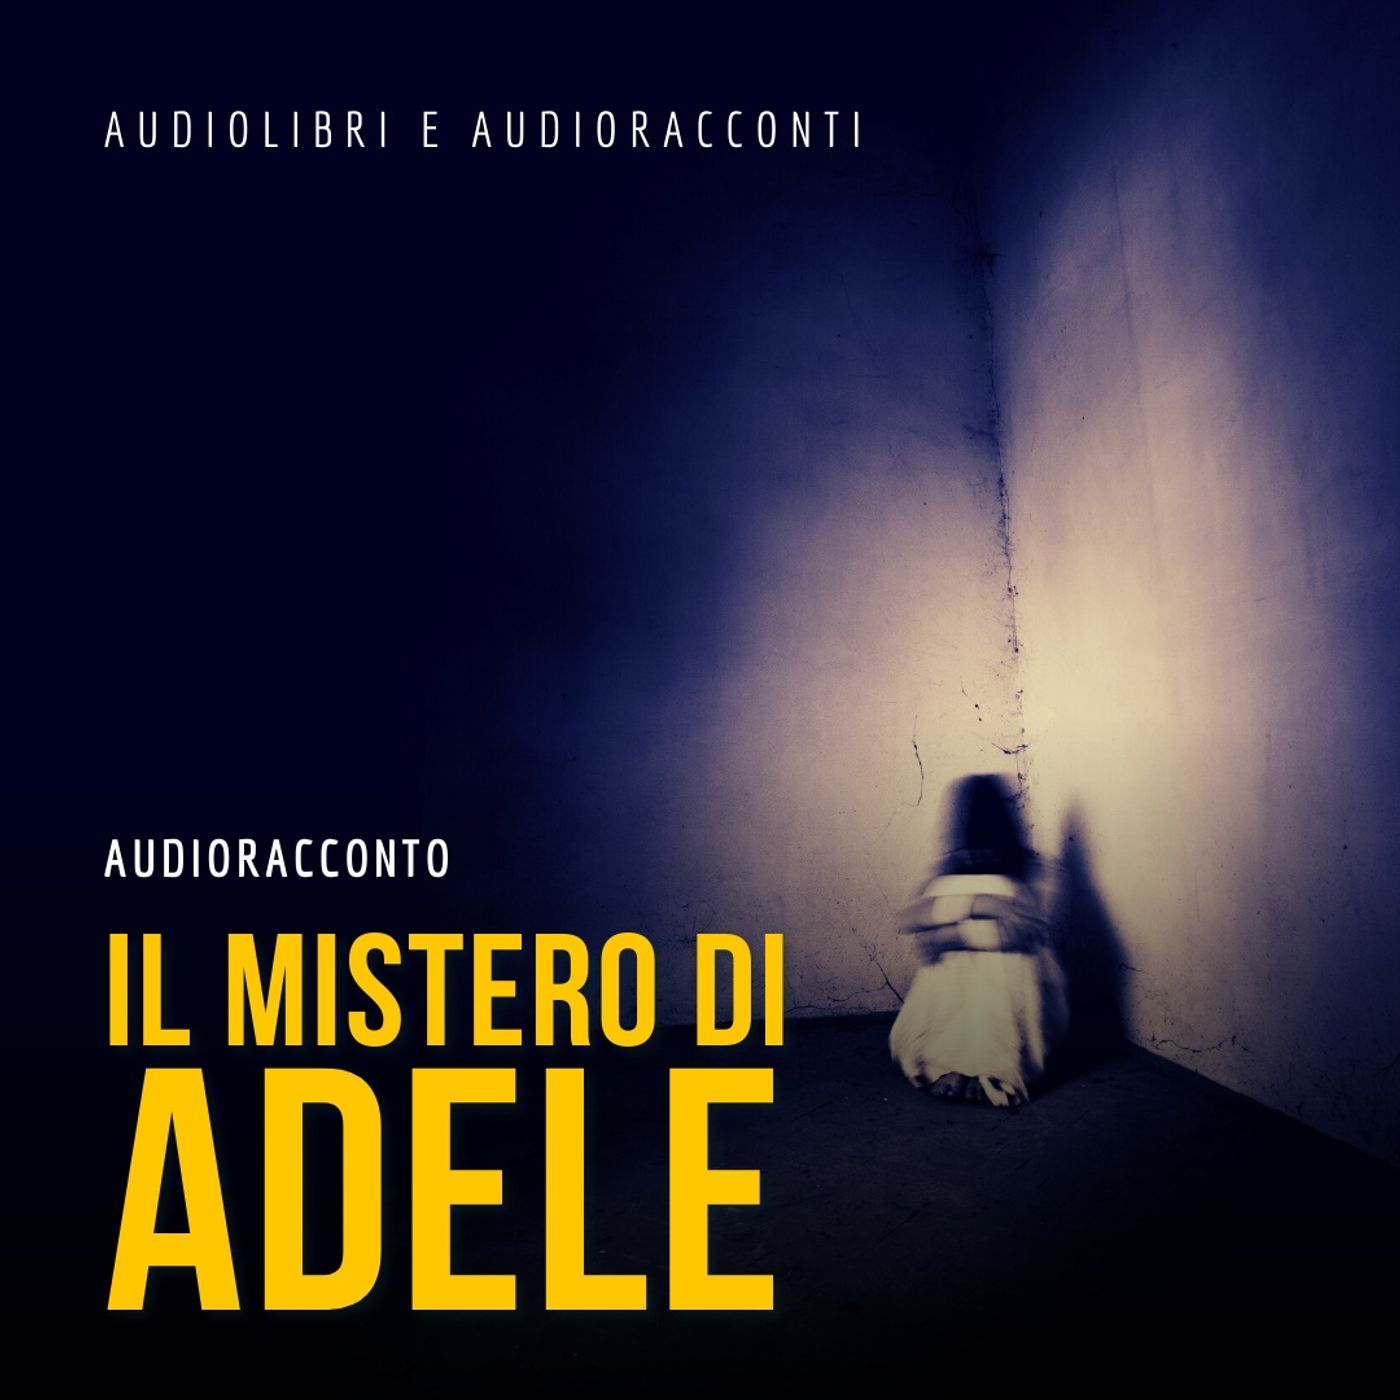 Il mistero di Adele - Audiolibri e Audioracconti